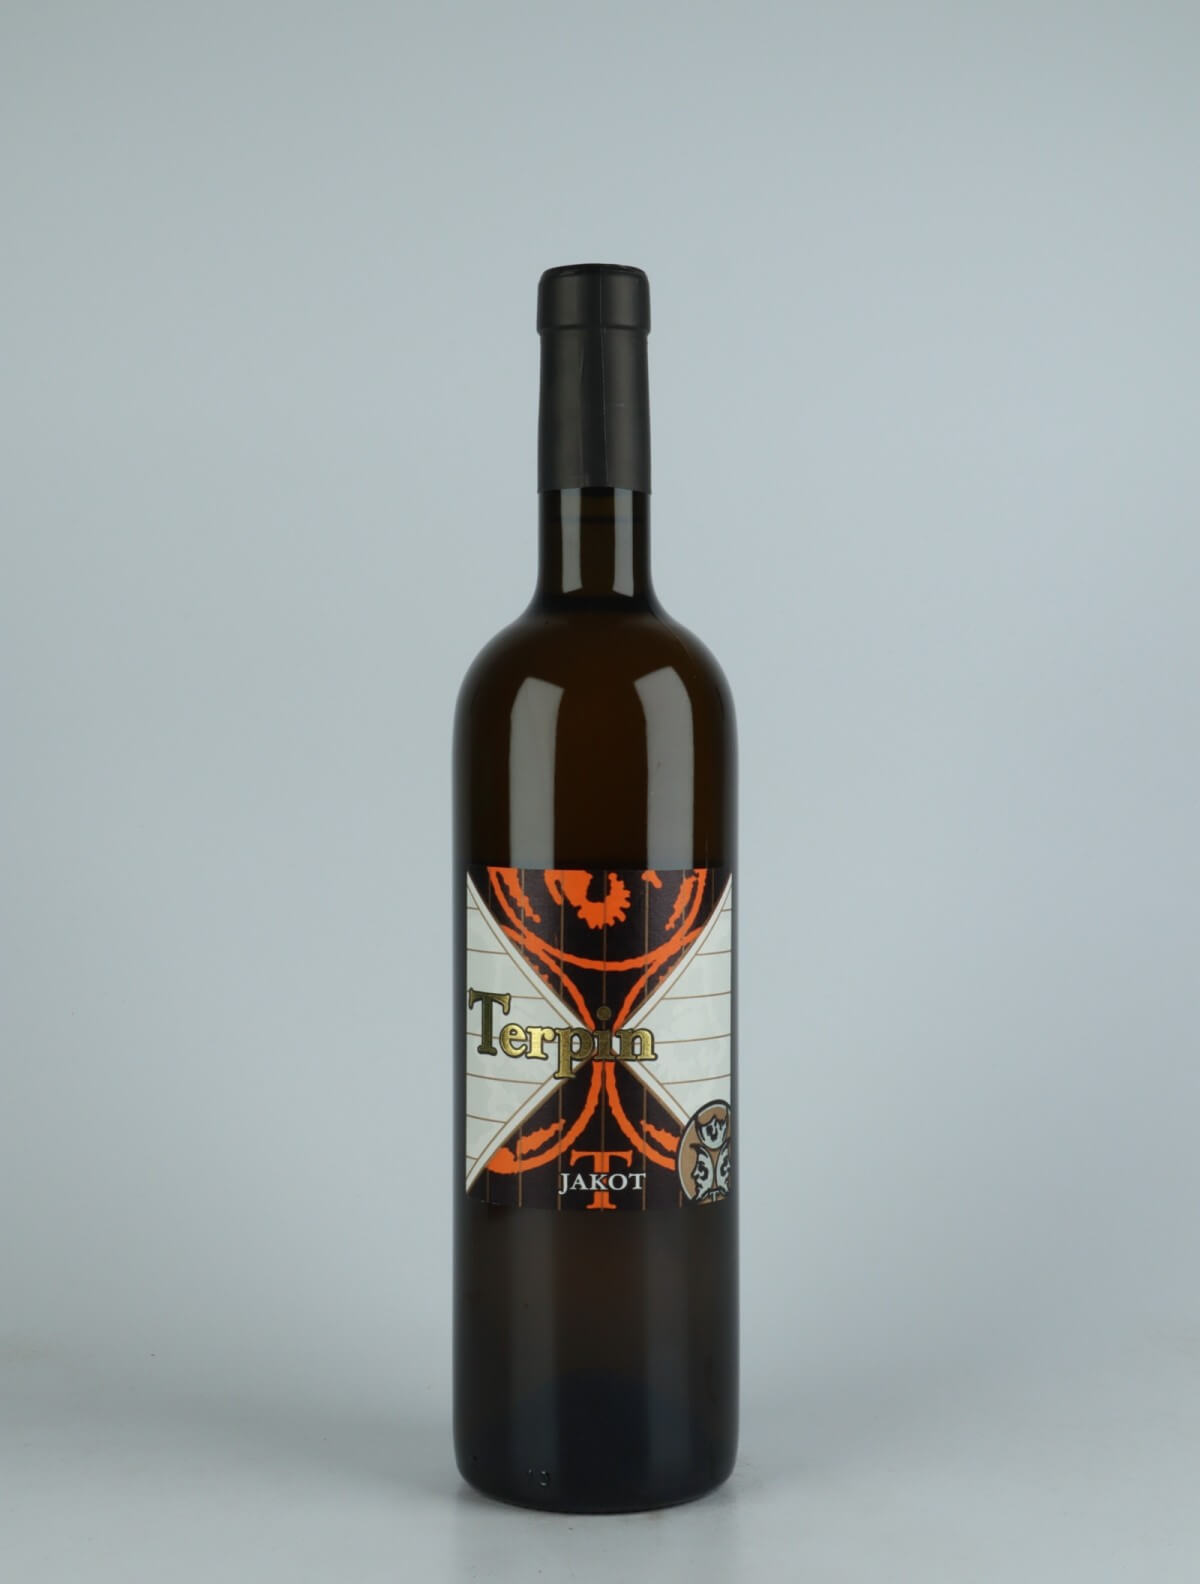 A bottle 2017 Jakot Orange wine from Franco Terpin, Friuli in Italy